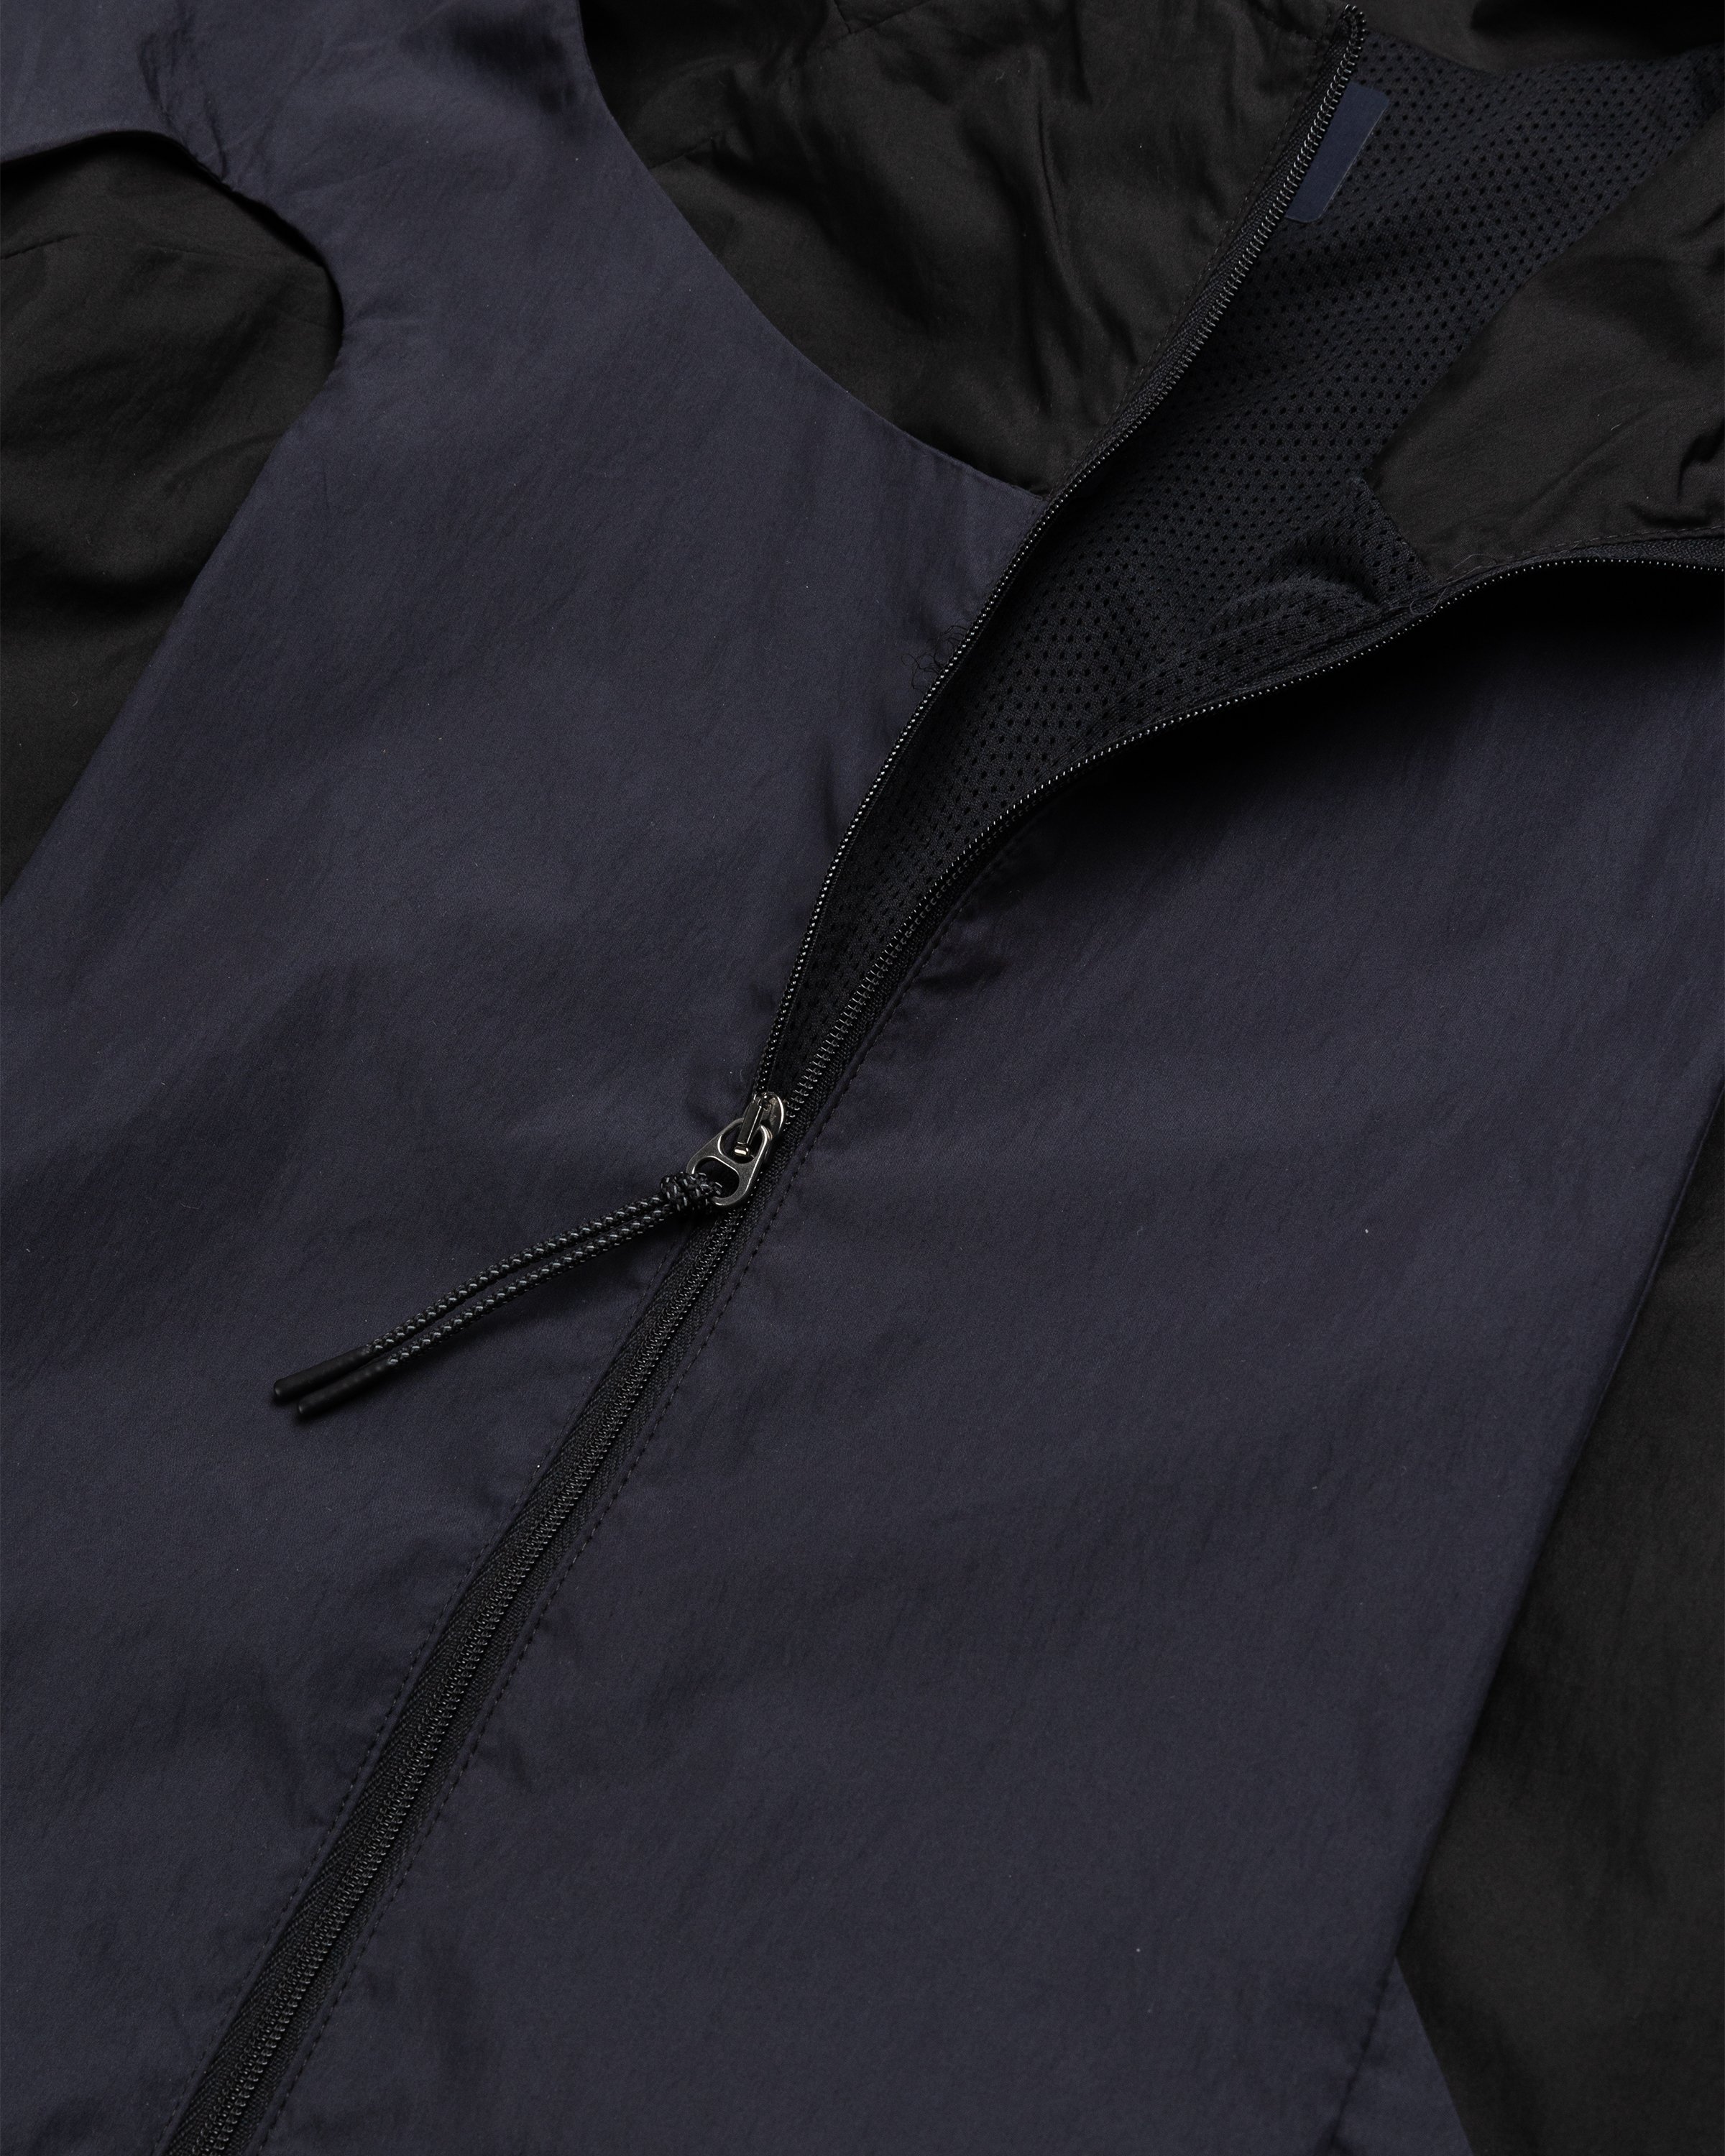 _J.L-A.L_ – Manifold Jacket Black | Highsnobiety Shop